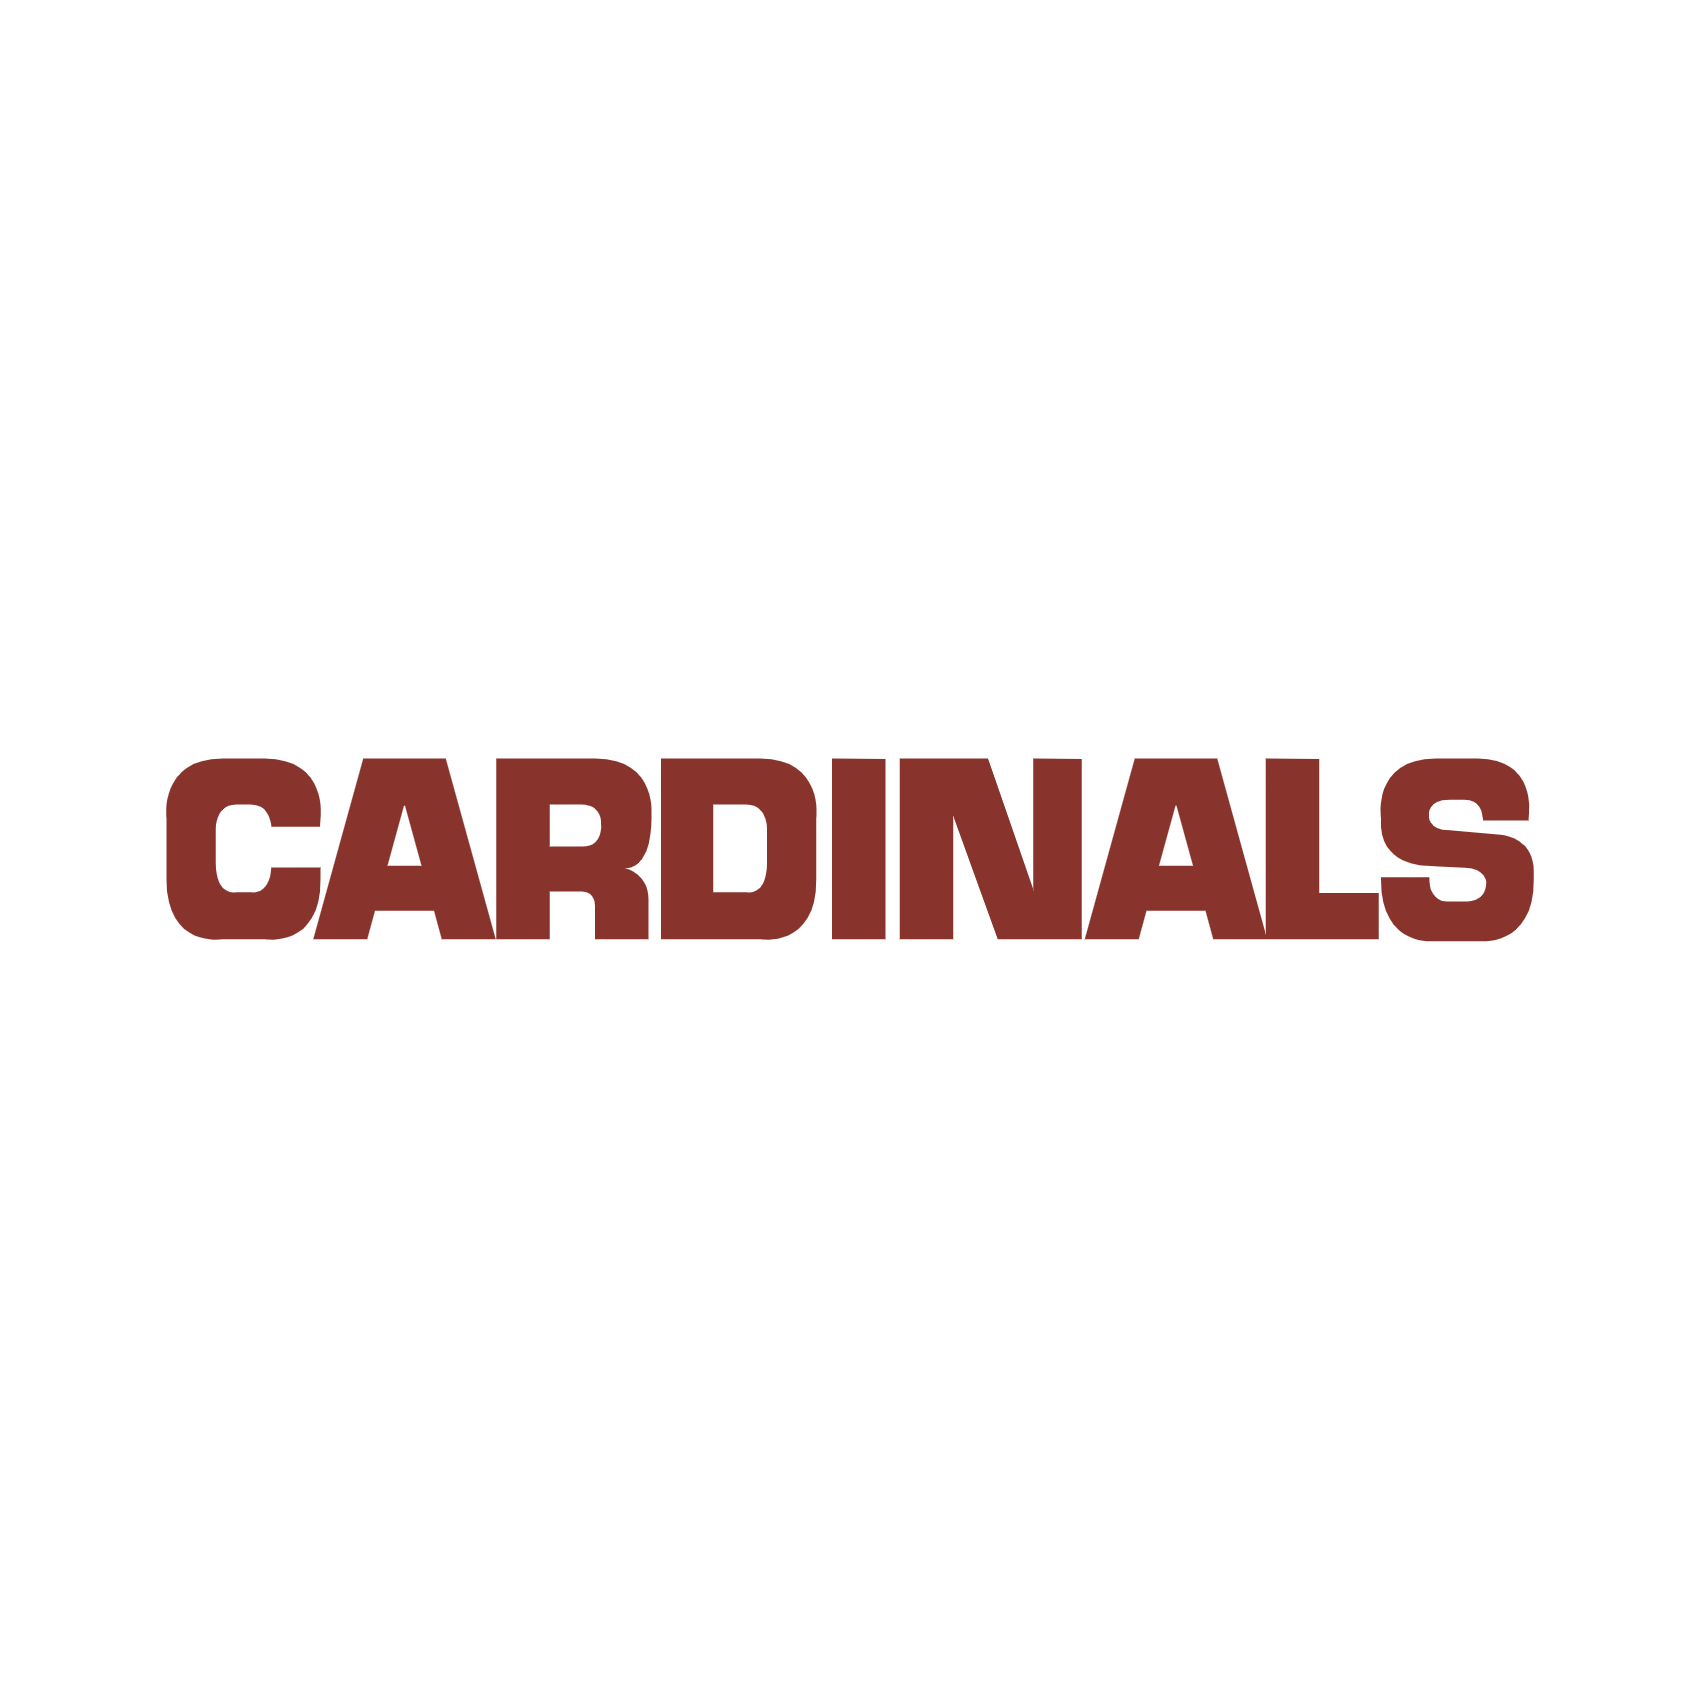 Download Arizona Cardinals Logo PNG and Vector (PDF, SVG, Ai, EPS) Free